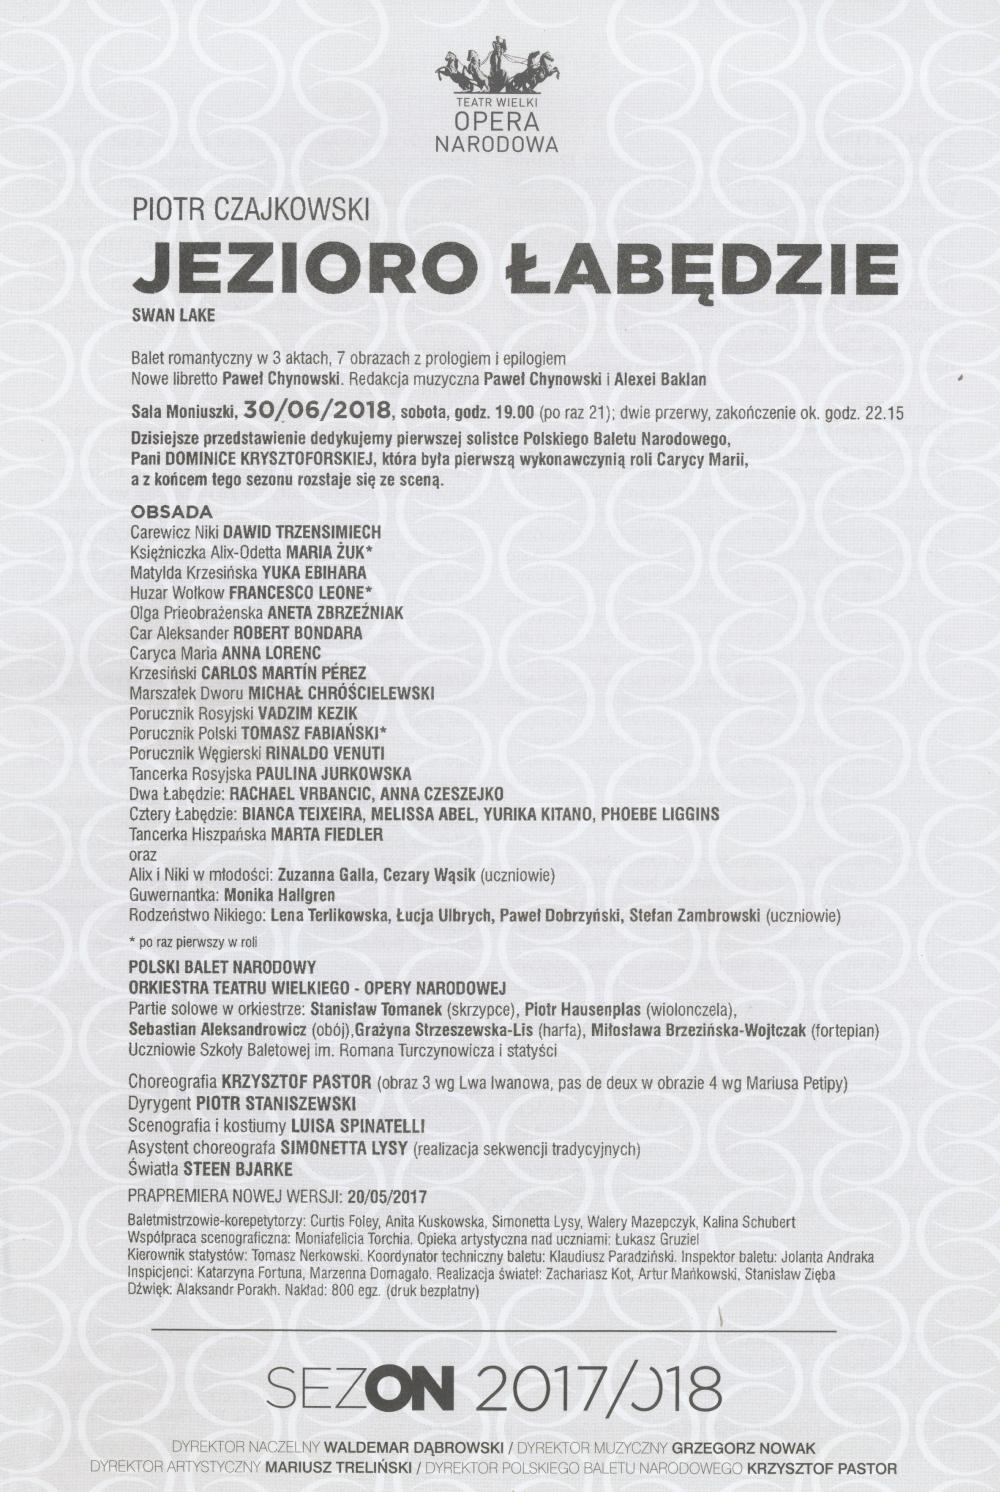 Wkładka obsadowa "Jezioro łabędzie" Piotr Czajkowski / Krzysztof Pastor, 2018-06-30